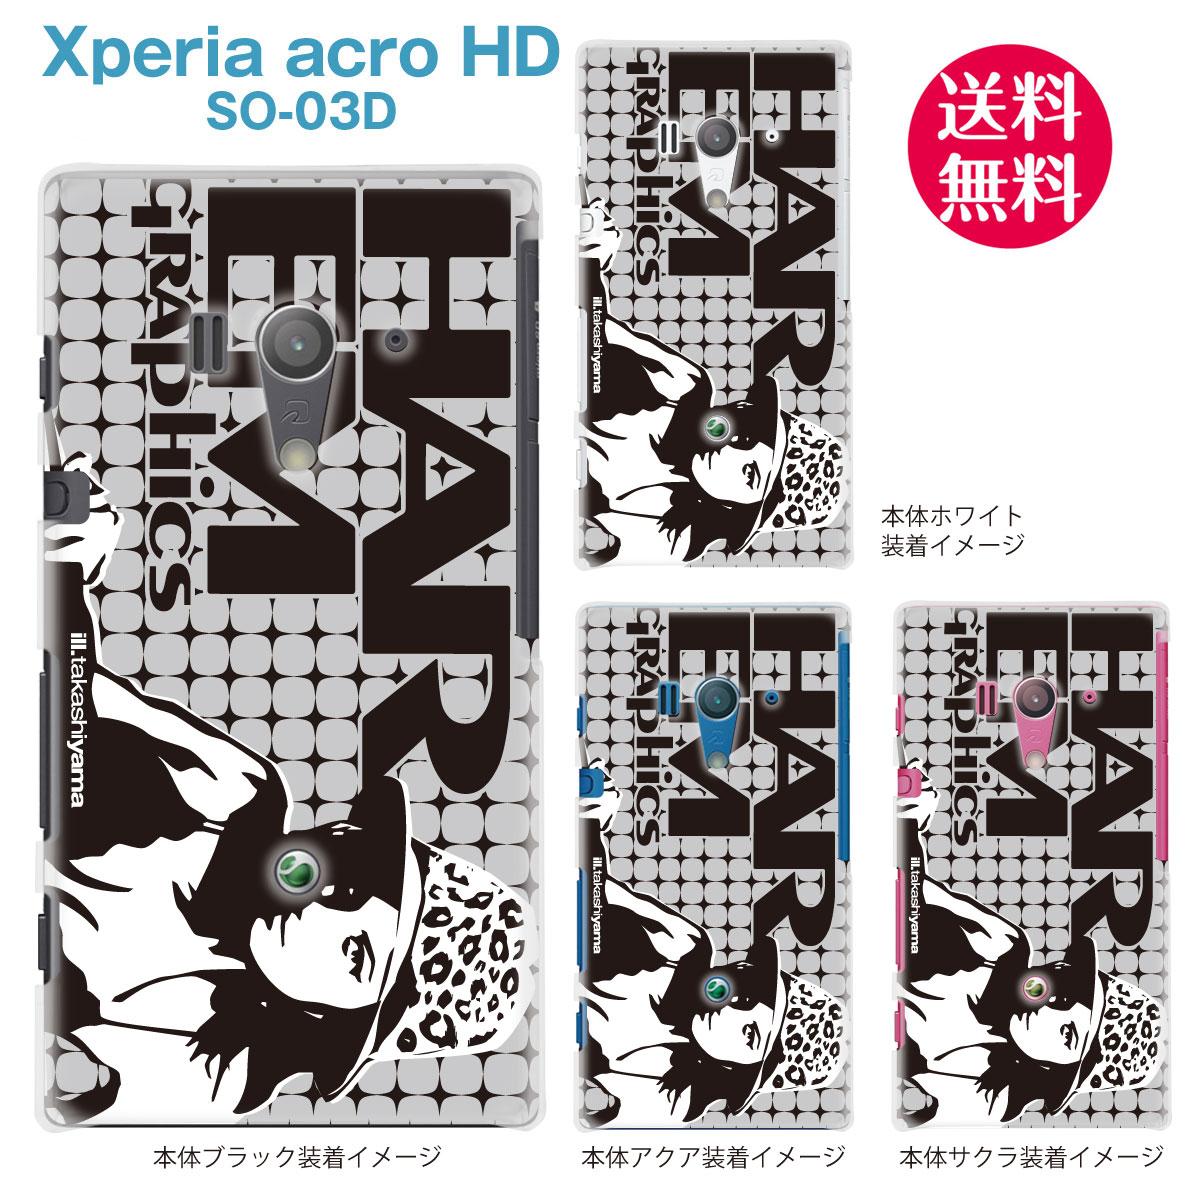 【HAREM GRAPHICS】【Xperia acro HD SO-03D】【docomo】【au】【IS12S】【ケース】【カバー】【スマホケース】【クリアケース】　hgx-so03d-009a